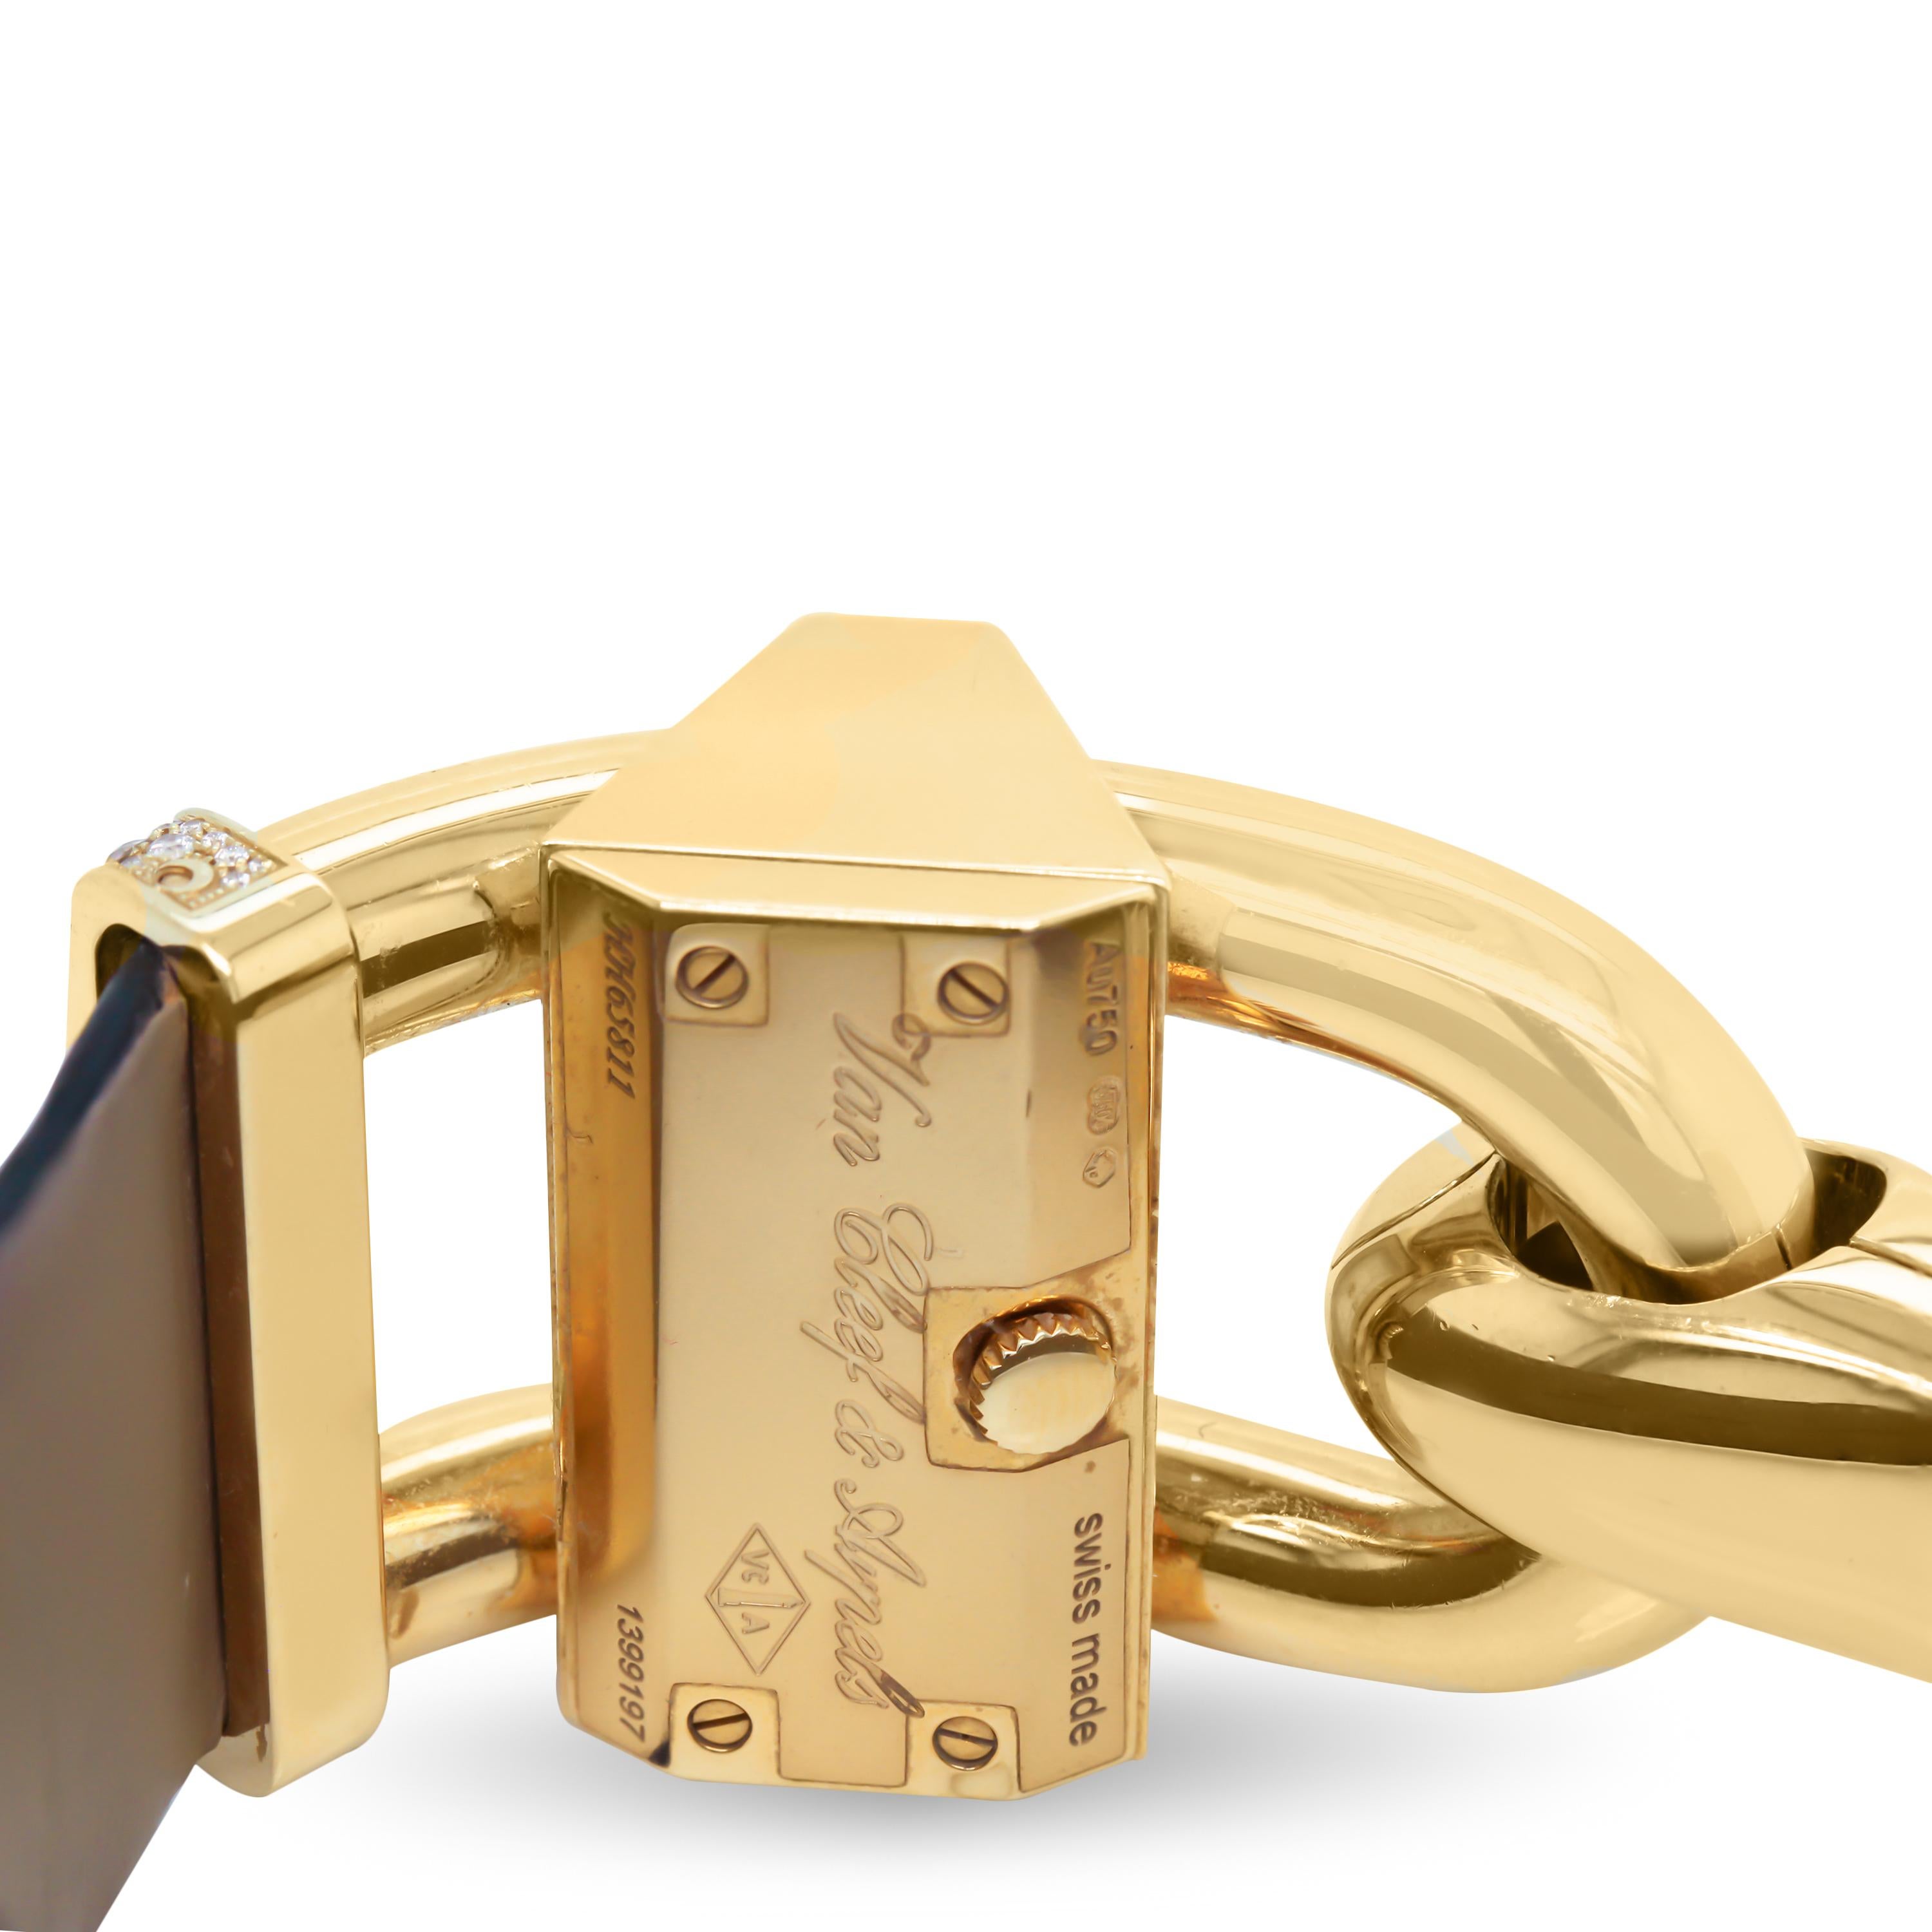 Contemporary Van Cleef & Arpels 18 Karat Yellow Gold Diamond Alligator Skin Cadenas Watch